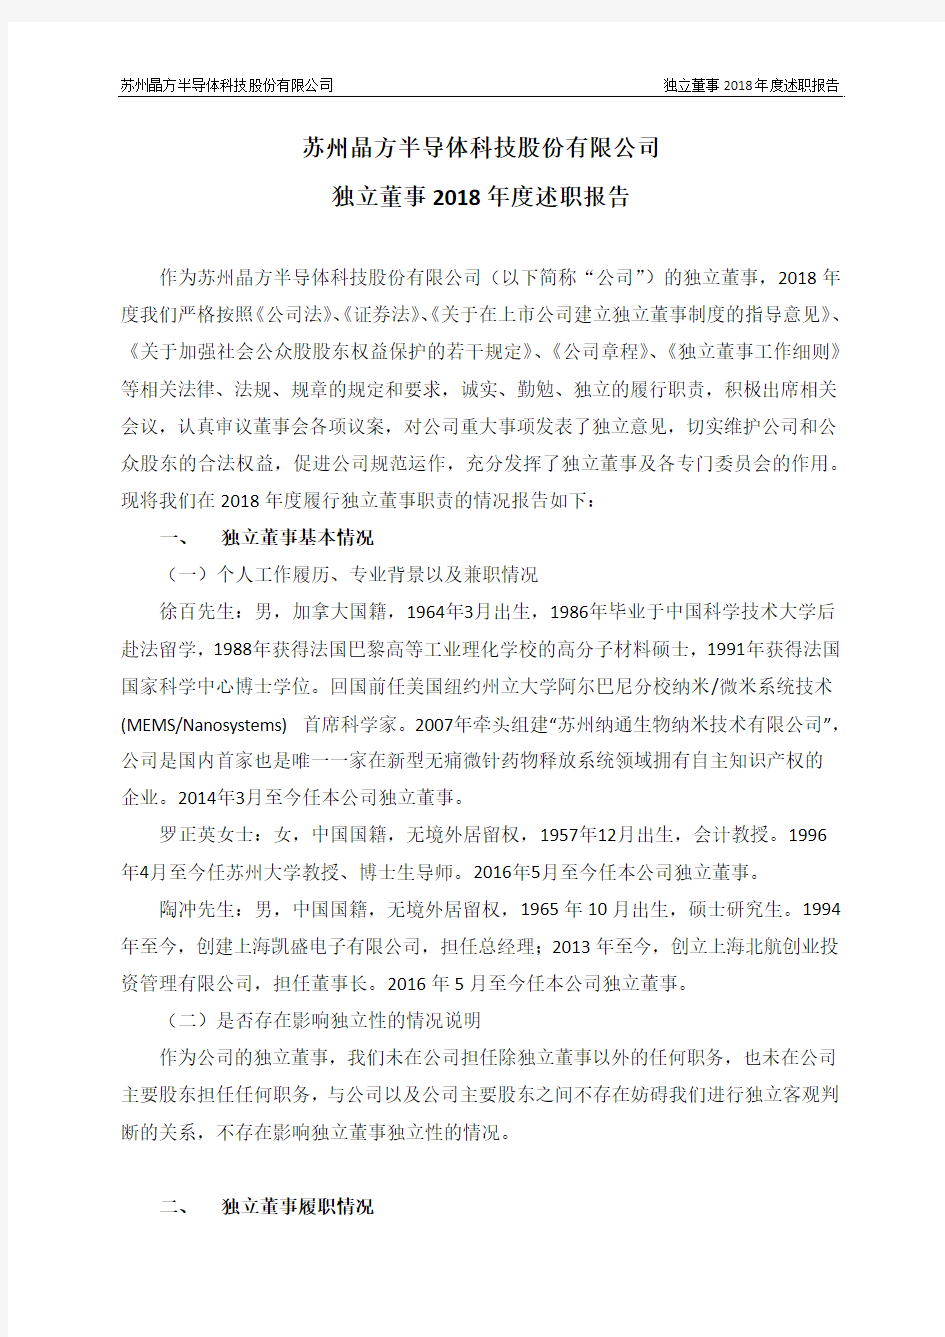 苏州晶方半导体科技股份有限公司独立董事2018年度述职报告